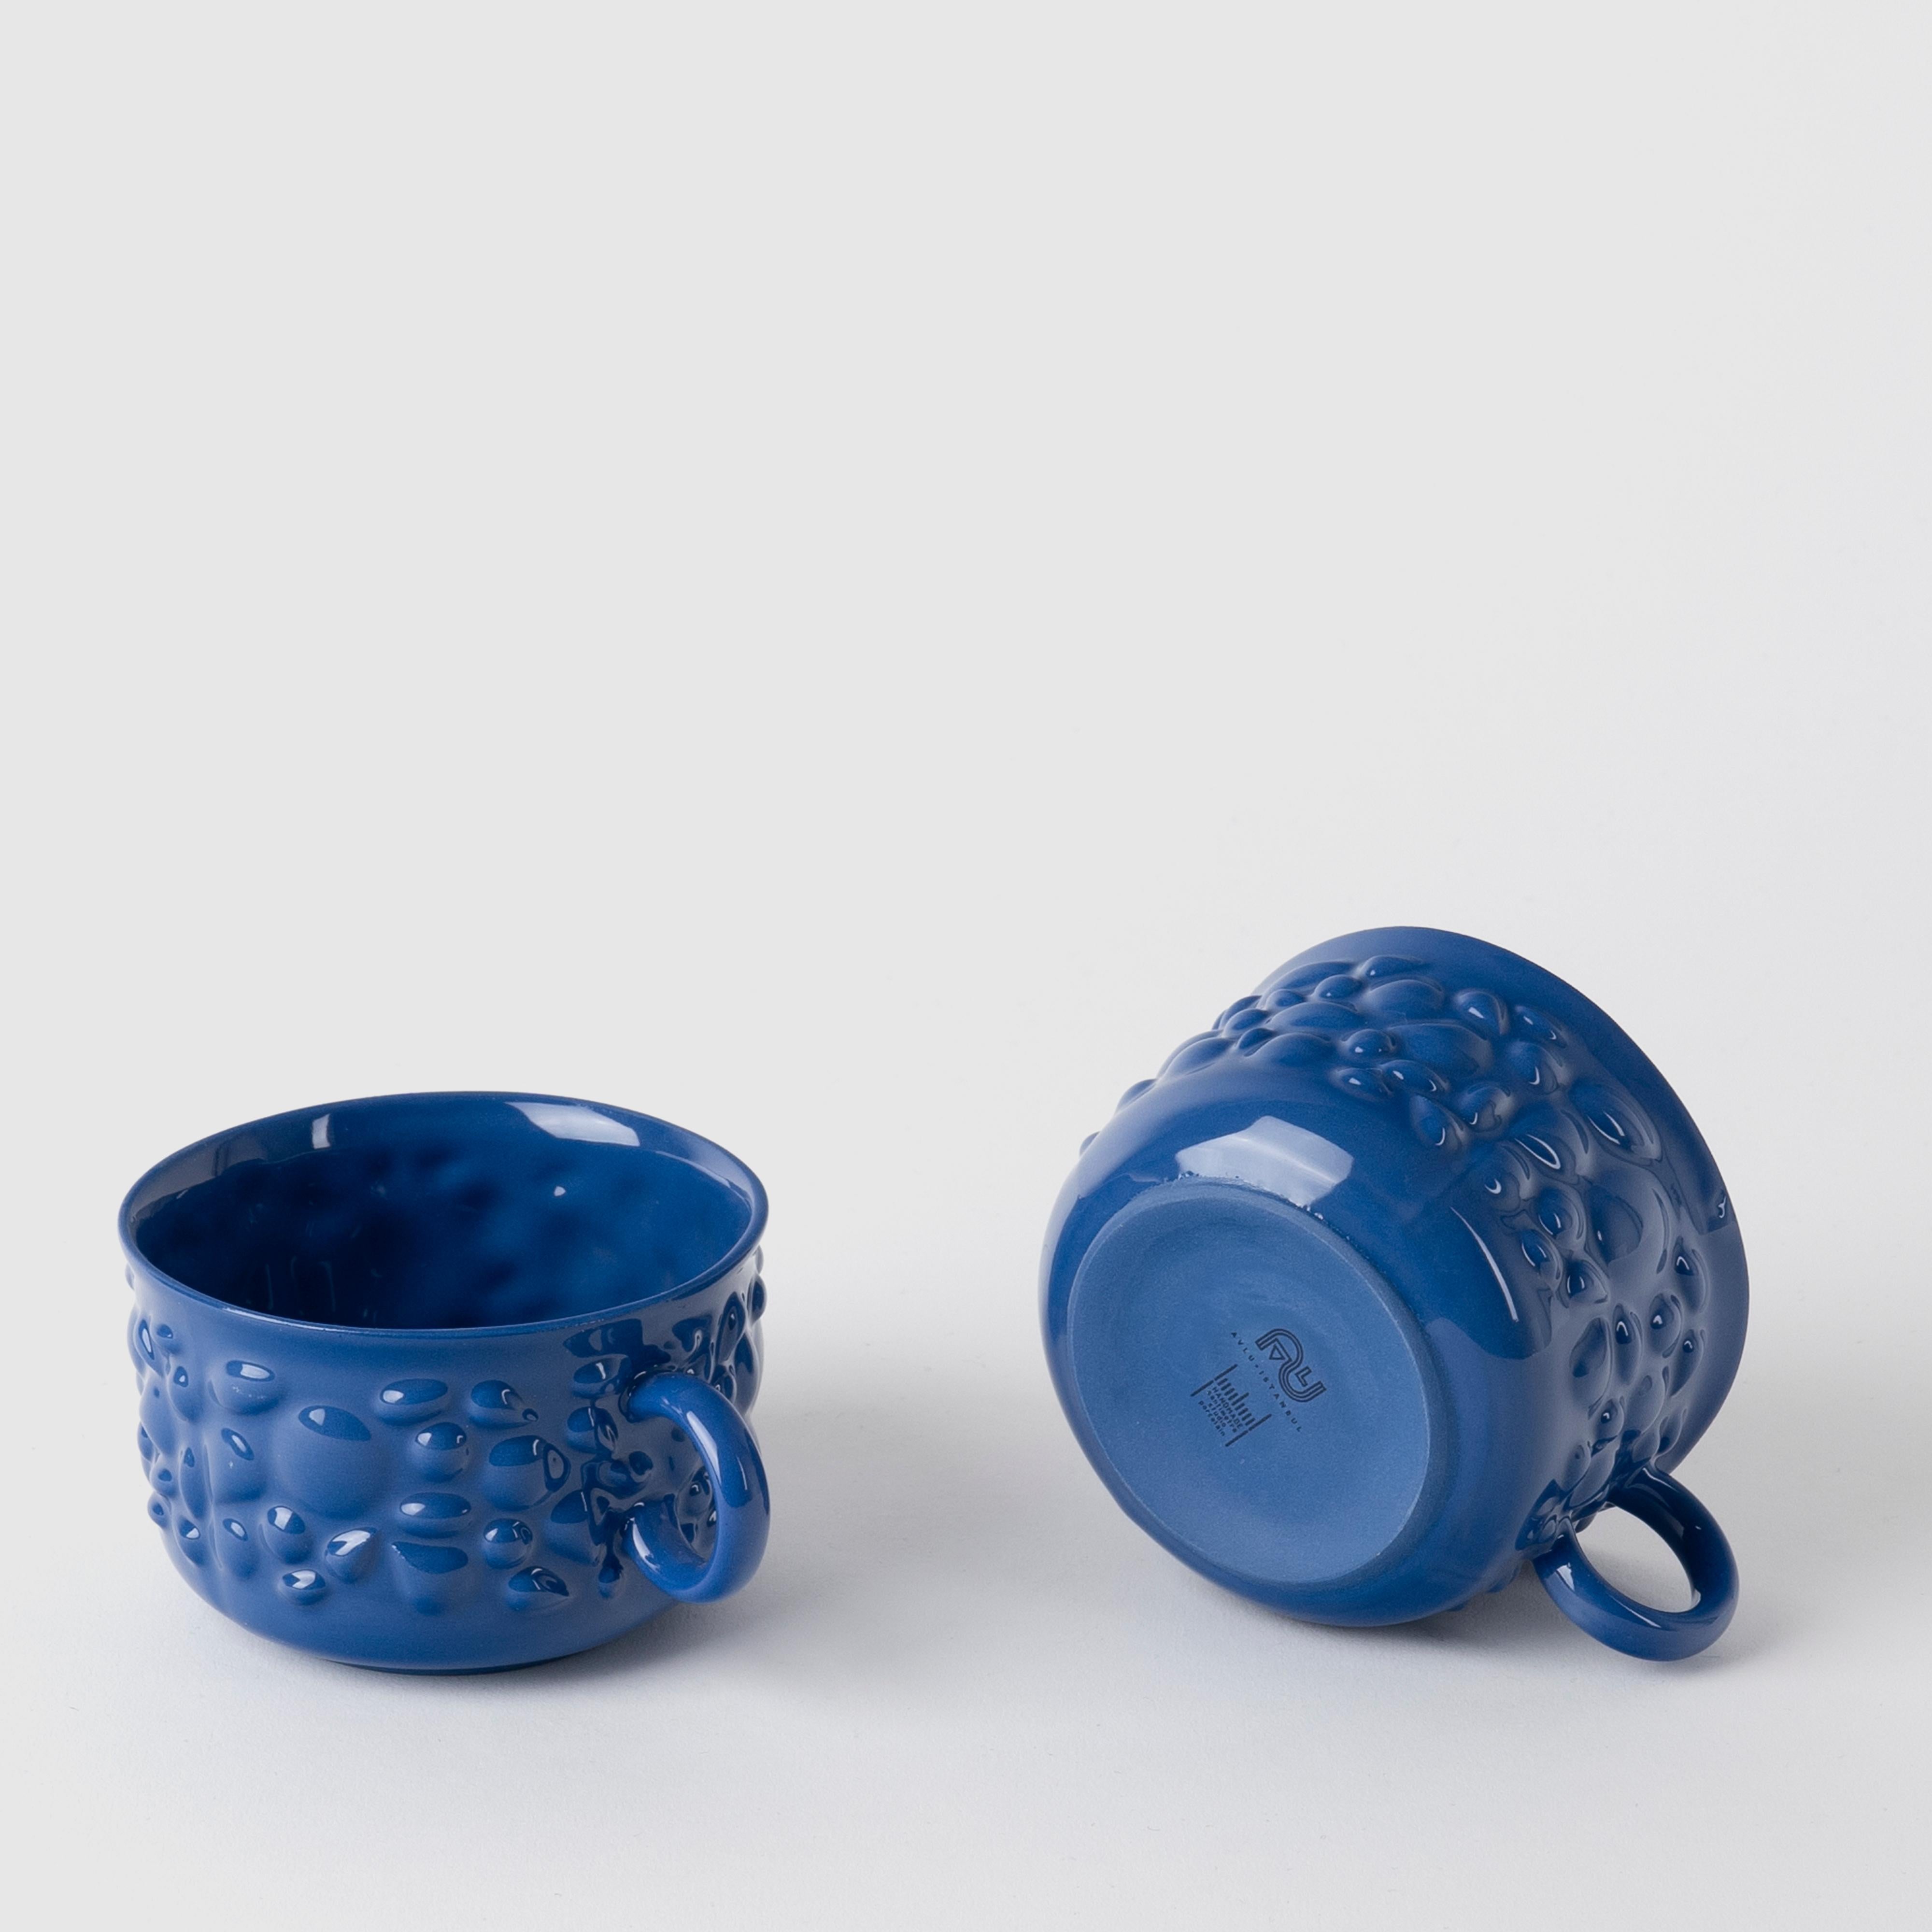 Les pièces de porcelaine de Justine sont inspirées des anciens bijoux byzantins. La porcelaine délicate transforme les tasses en objets de design intemporels en traduisant les détails en perles et en pierres des bijoux en formes fluides.

Avec ses